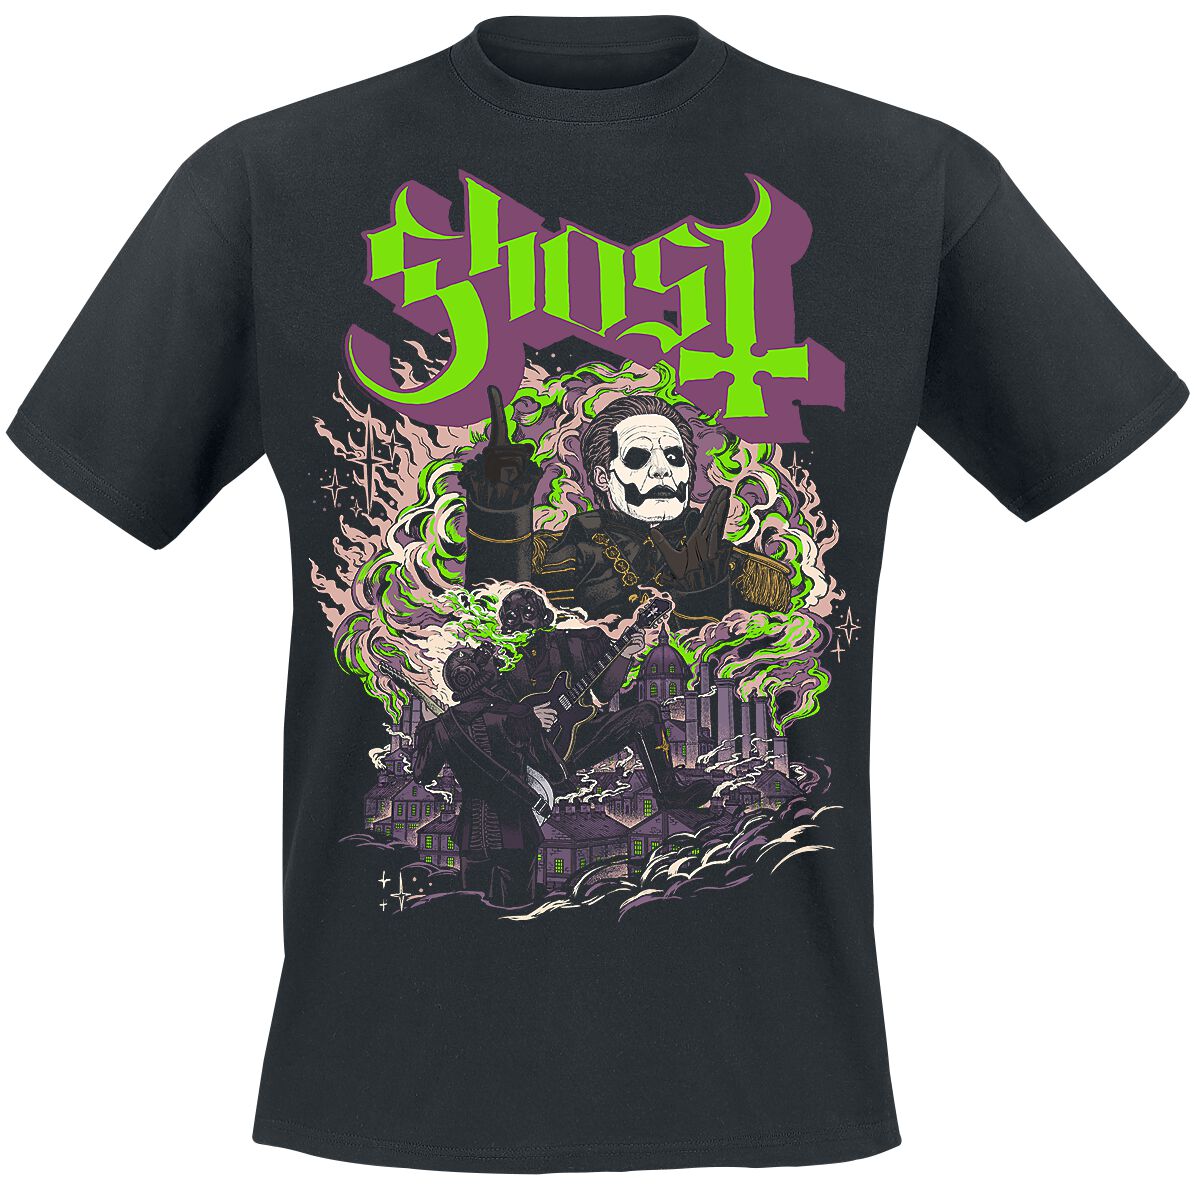 Ghost T-Shirt - FOG - YK - S bis 4XL - für Männer - Größe 4XL - schwarz  - Lizenziertes Merchandise!